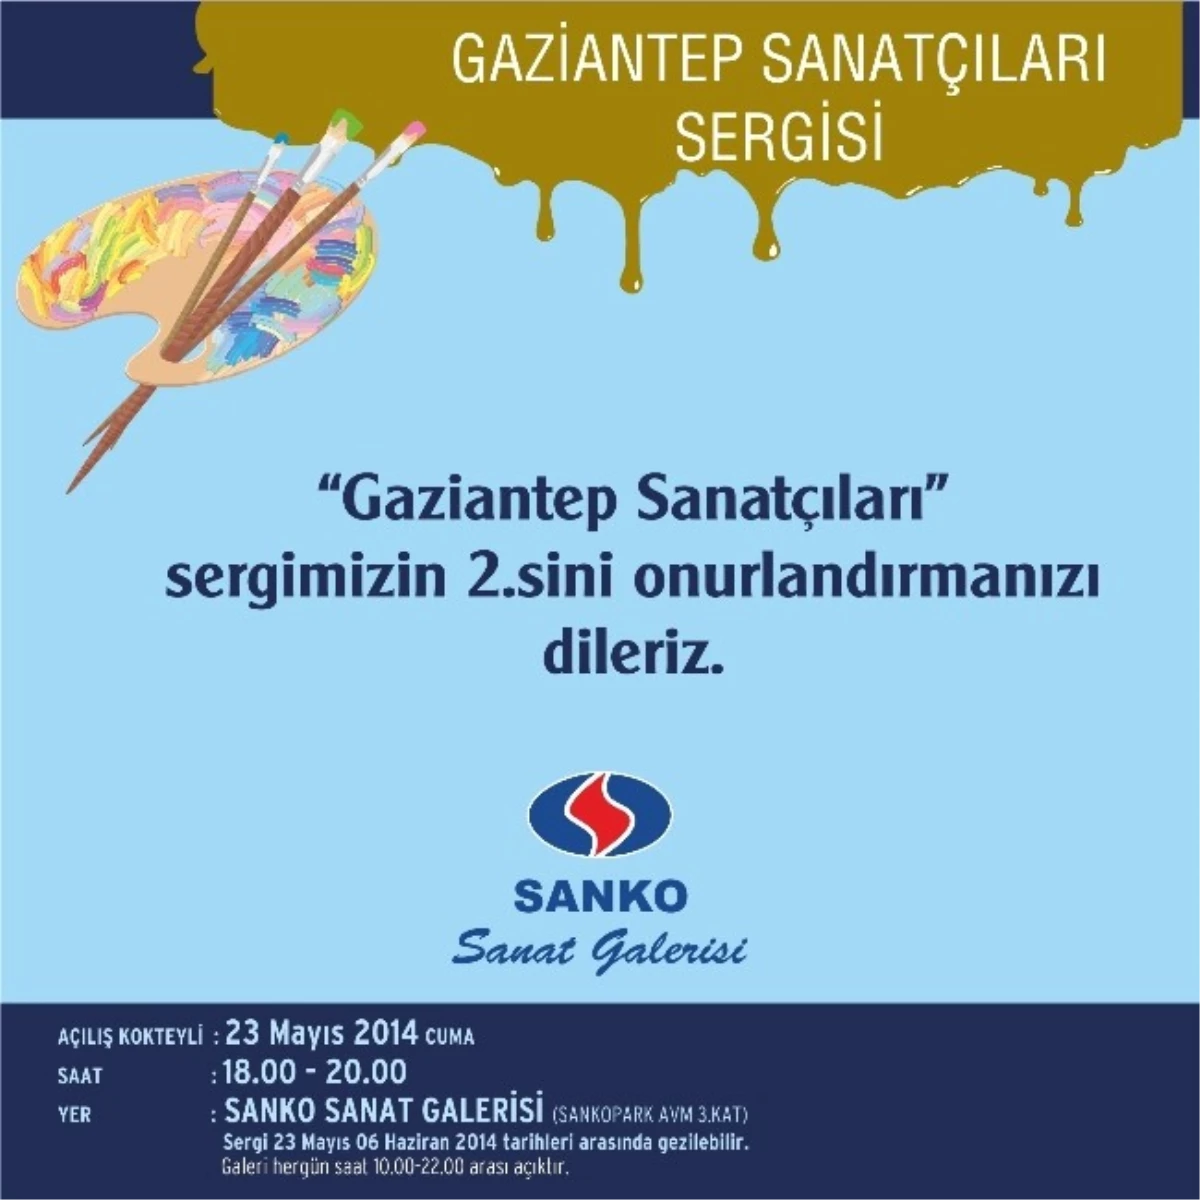 "Gaziantep Sanatçıları Sergisi"